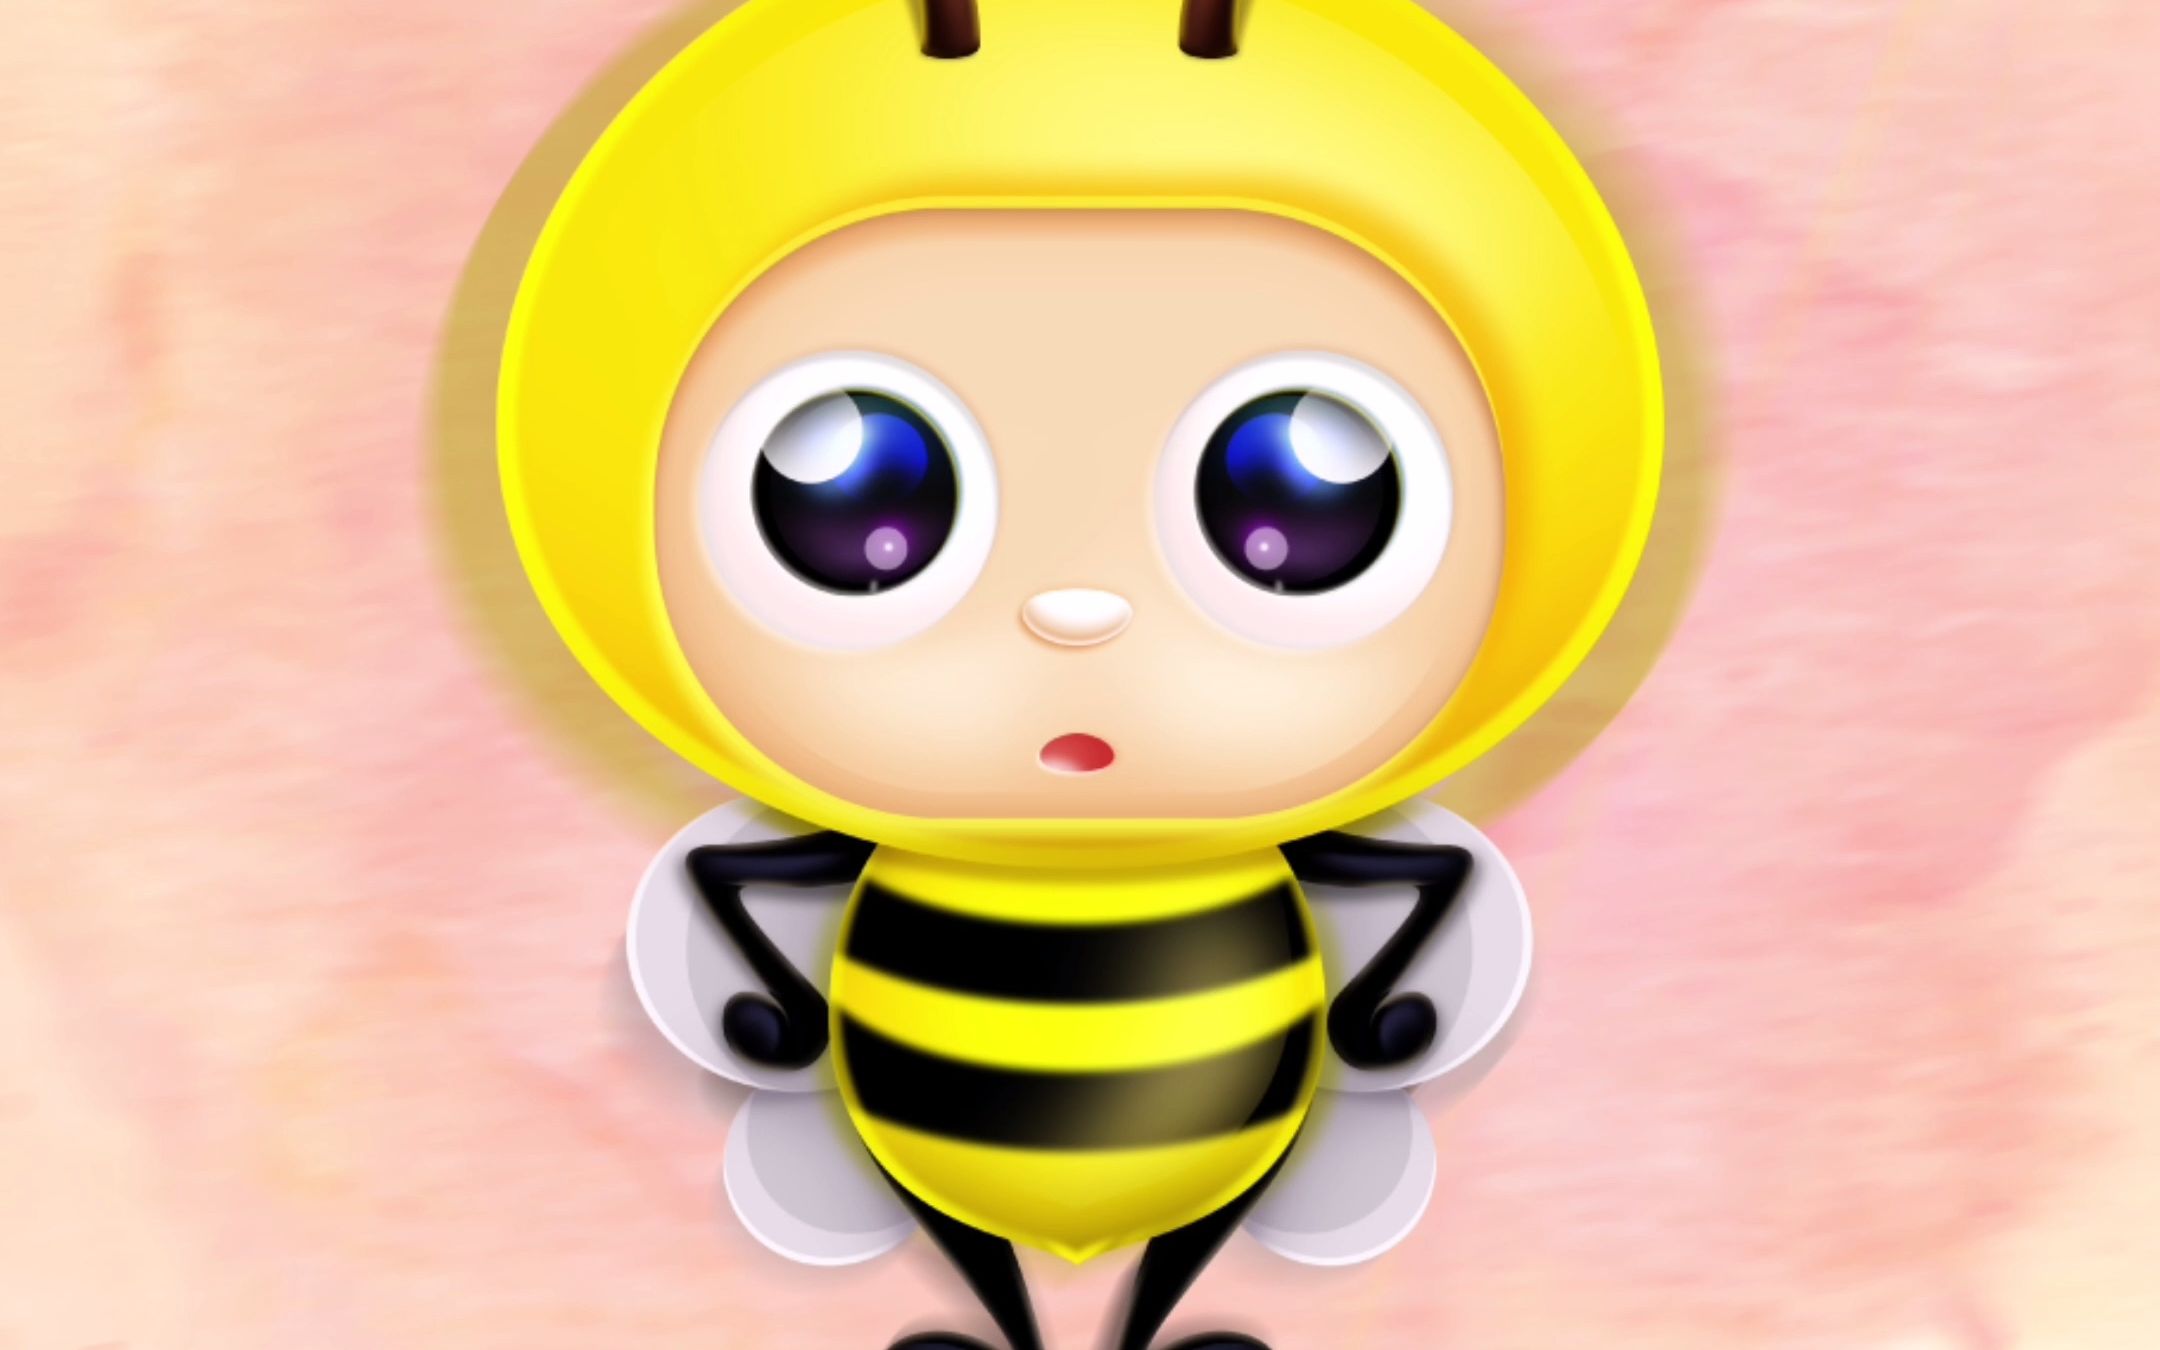 蜜蜂卡通吉祥物 简丹卡通 蜜蜂插画 原创小蜜蜂 可爱蜜蜂 蜜蜂插图